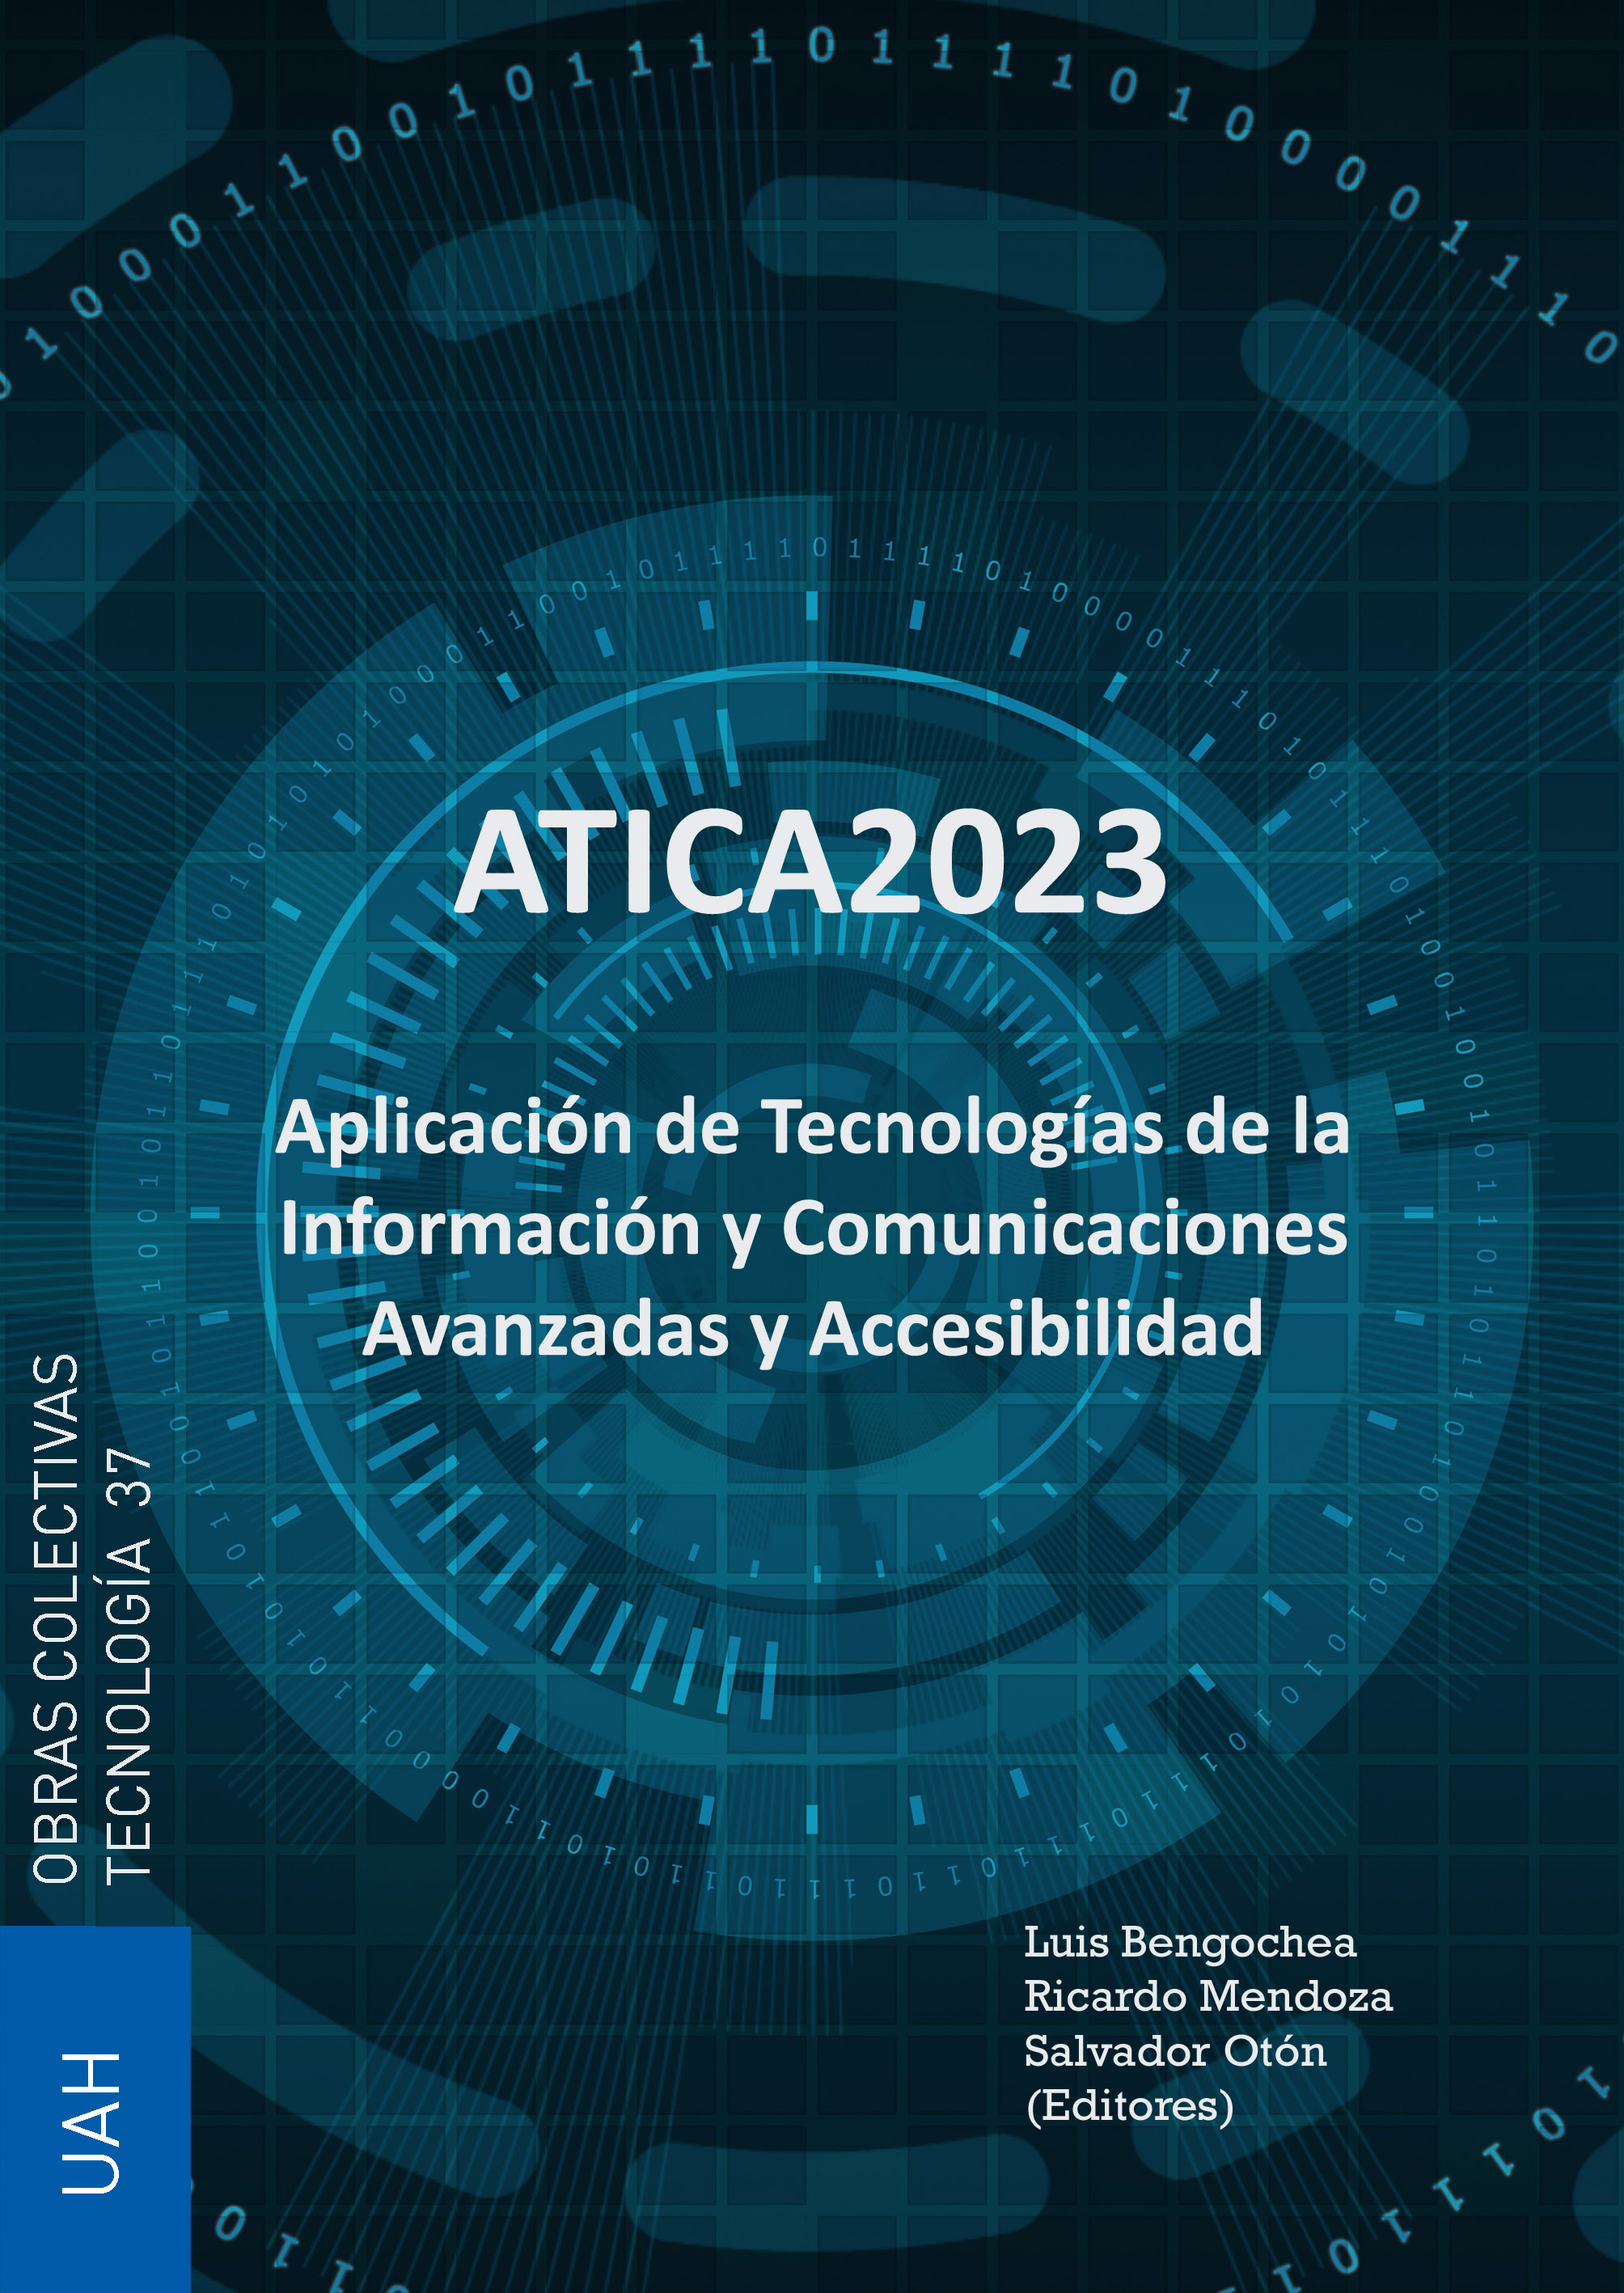 Aplicación de Tecnologías de la Información y Comunicaciones Avanzadas y Accesibilidad - ATICA 2023